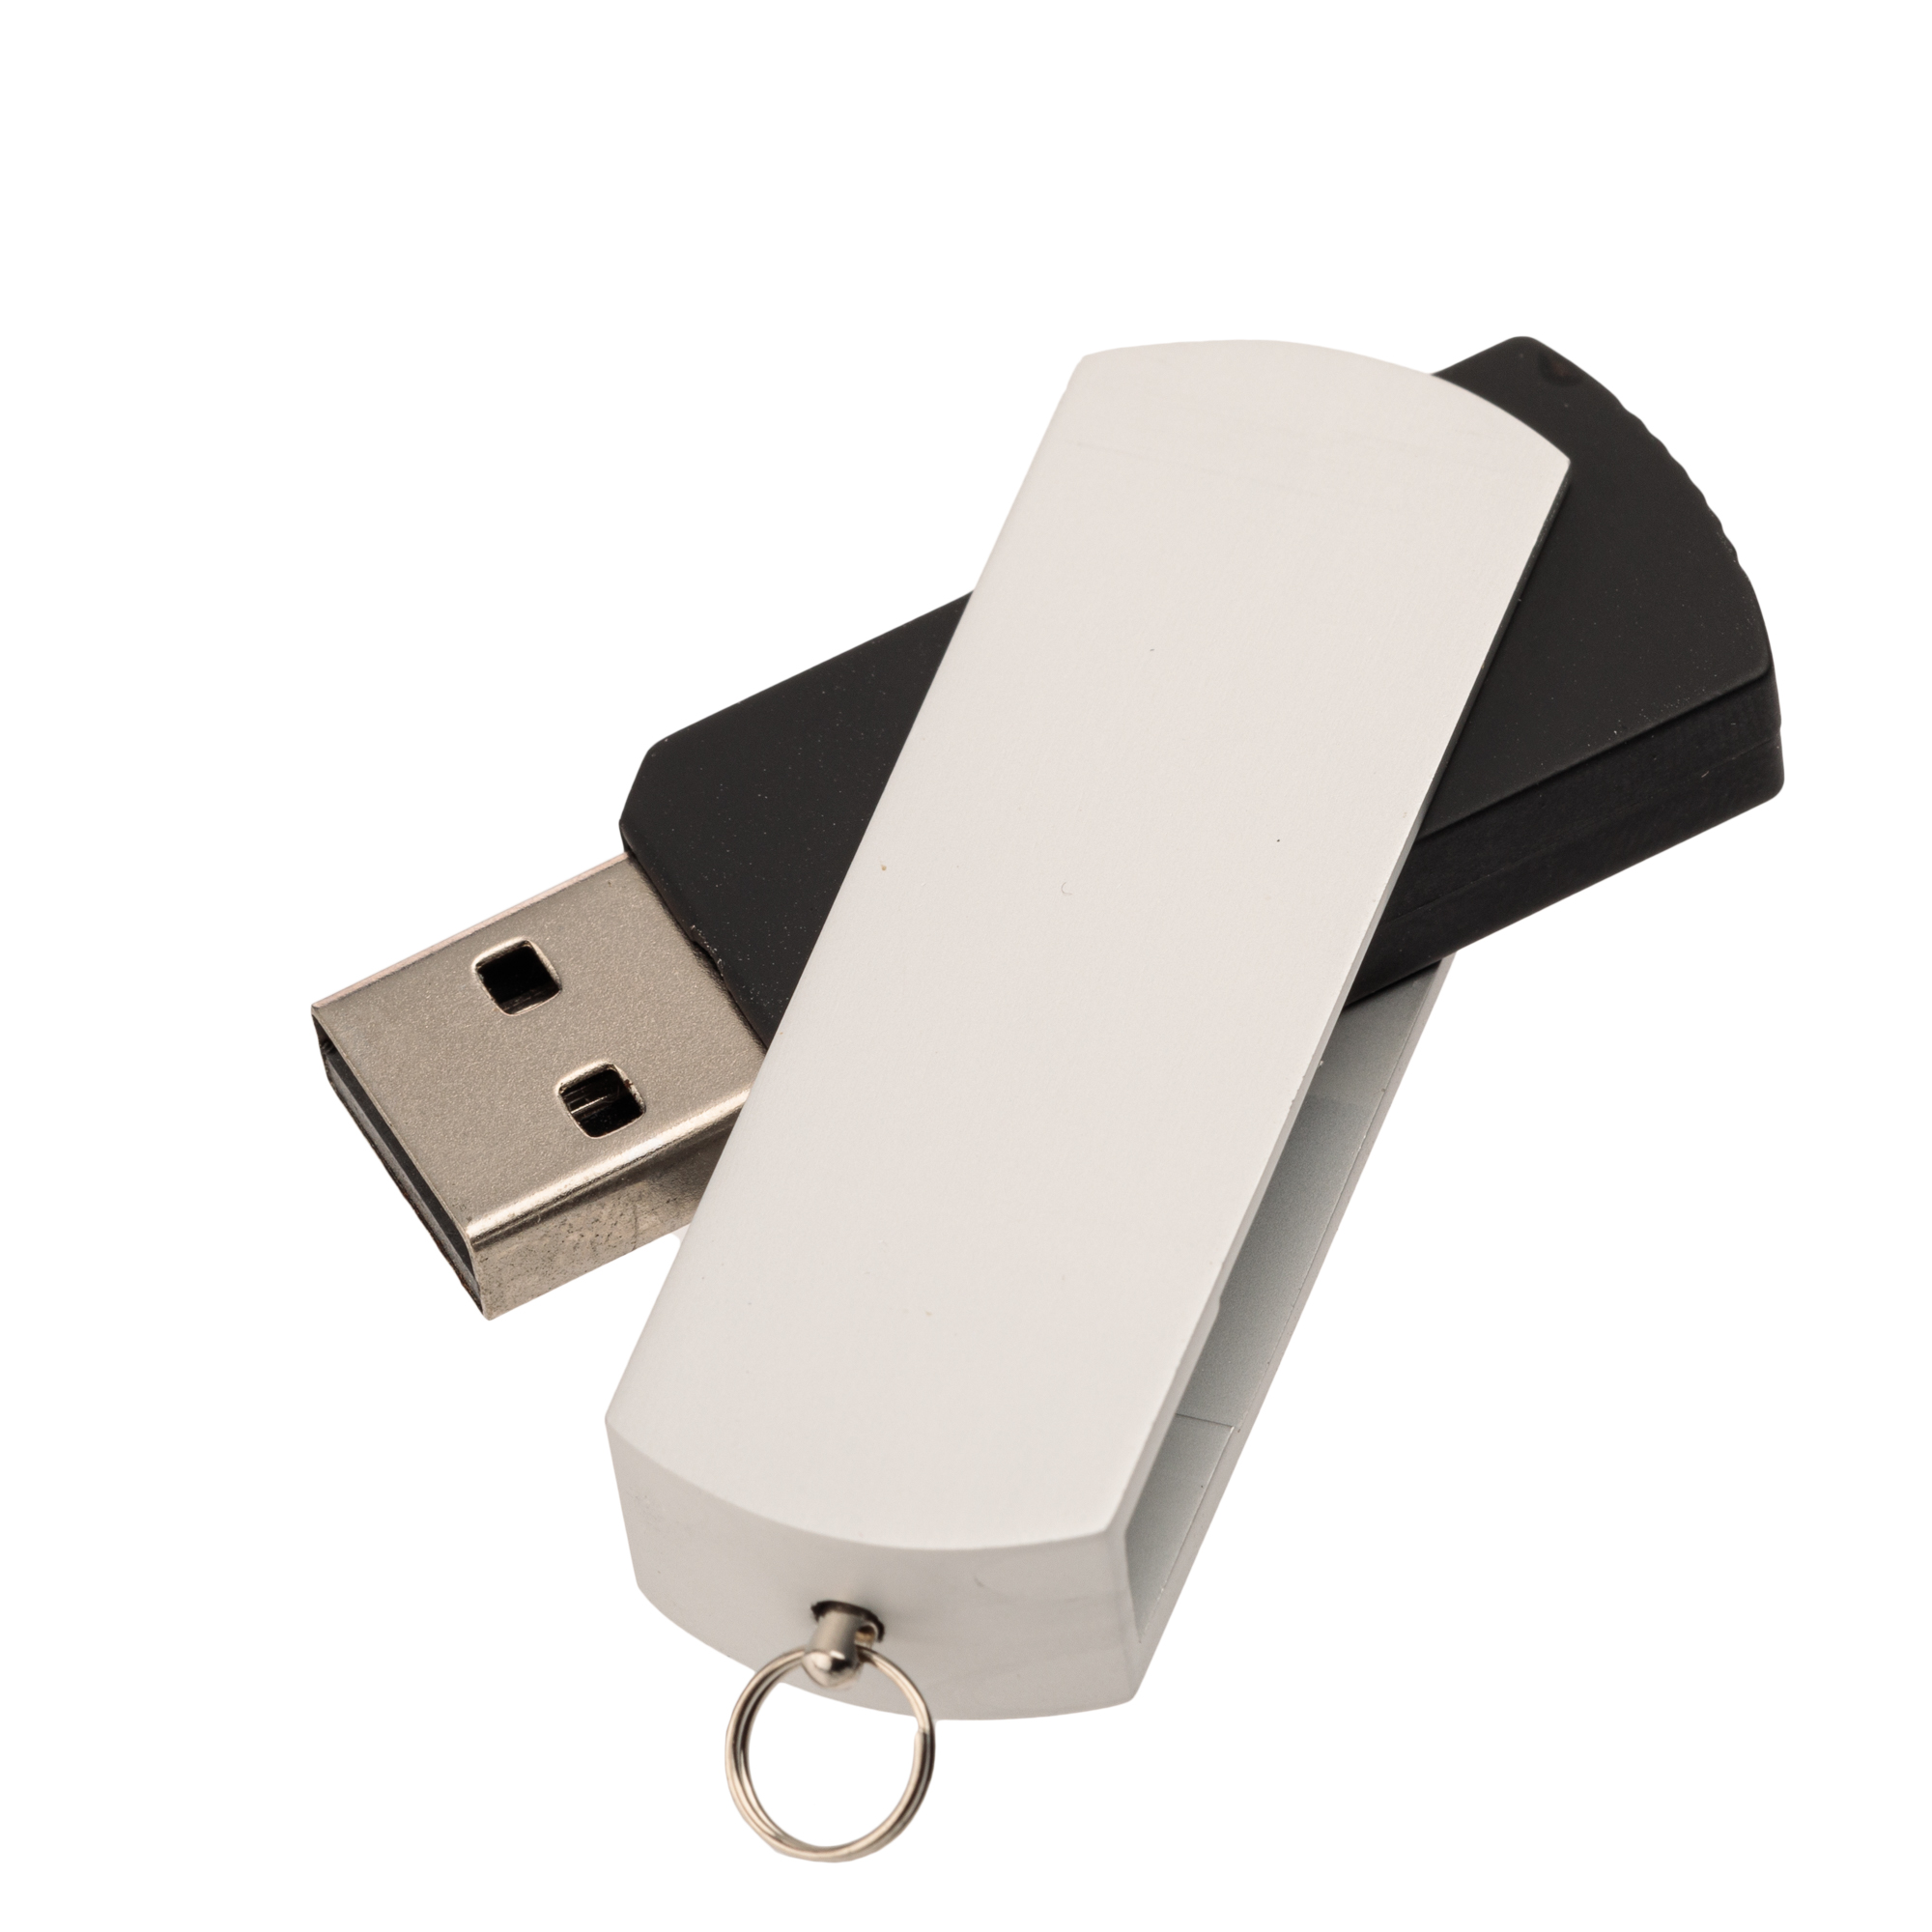 USB-флешка модель 107 (3.0), объем памяти 128 GB, цвет черный